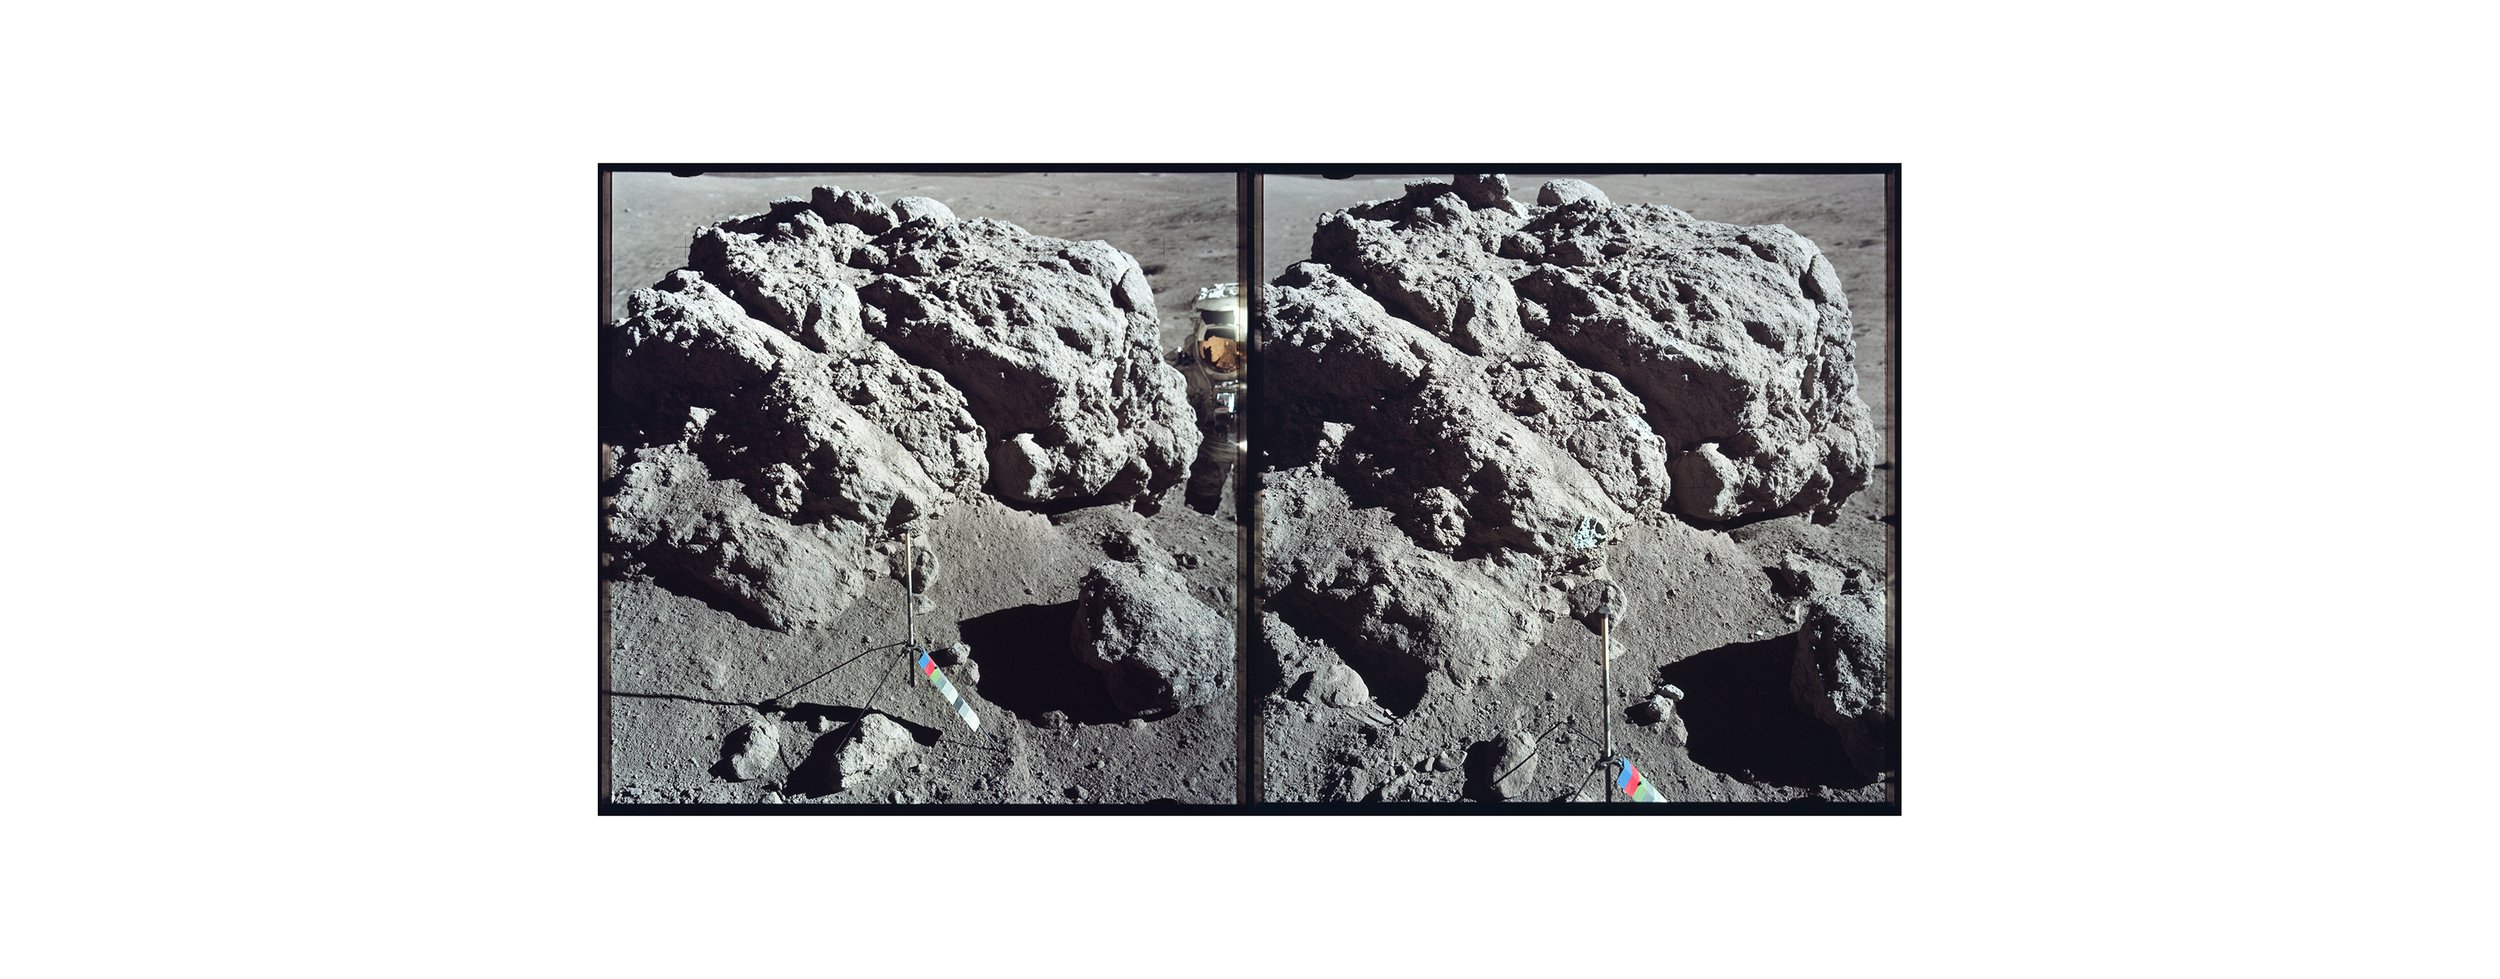  Taurus Mountains, astronaut and gnomon (100x60)Apollo 17 Magazine 137/C - NASA photographs 1972 